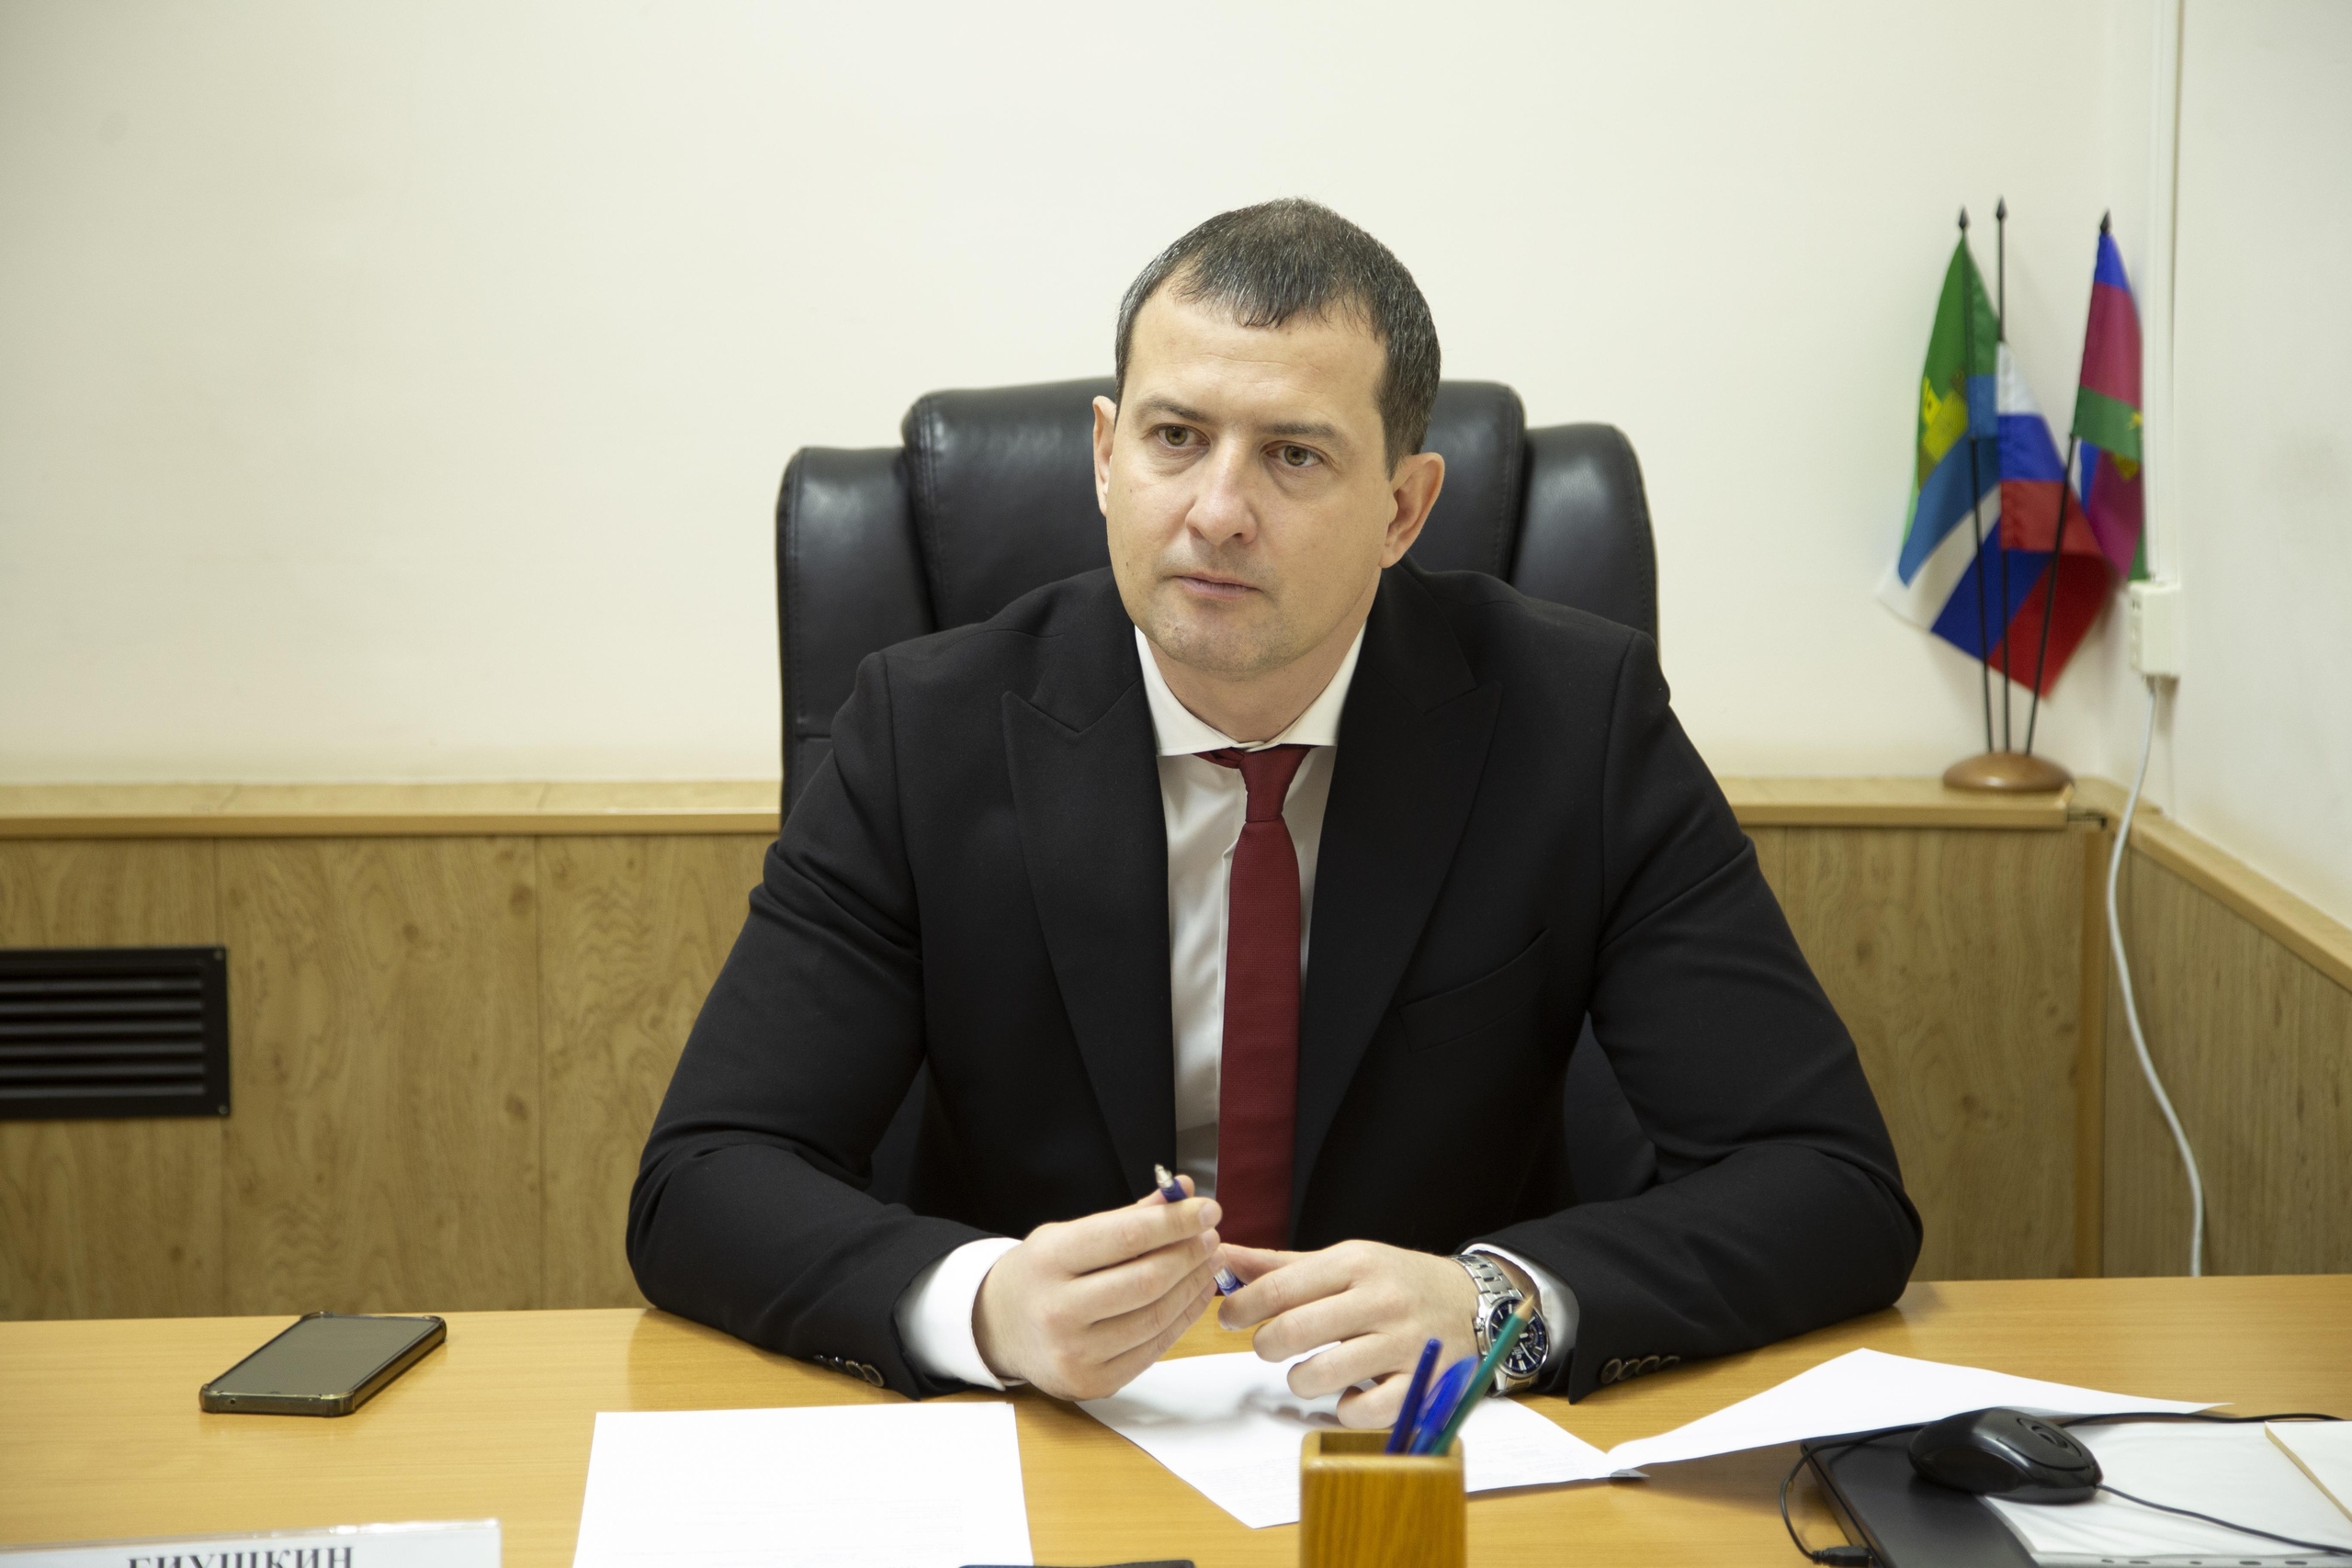 Первый прием граждан в качестве главы муниципалитета провел Илья Биушкин